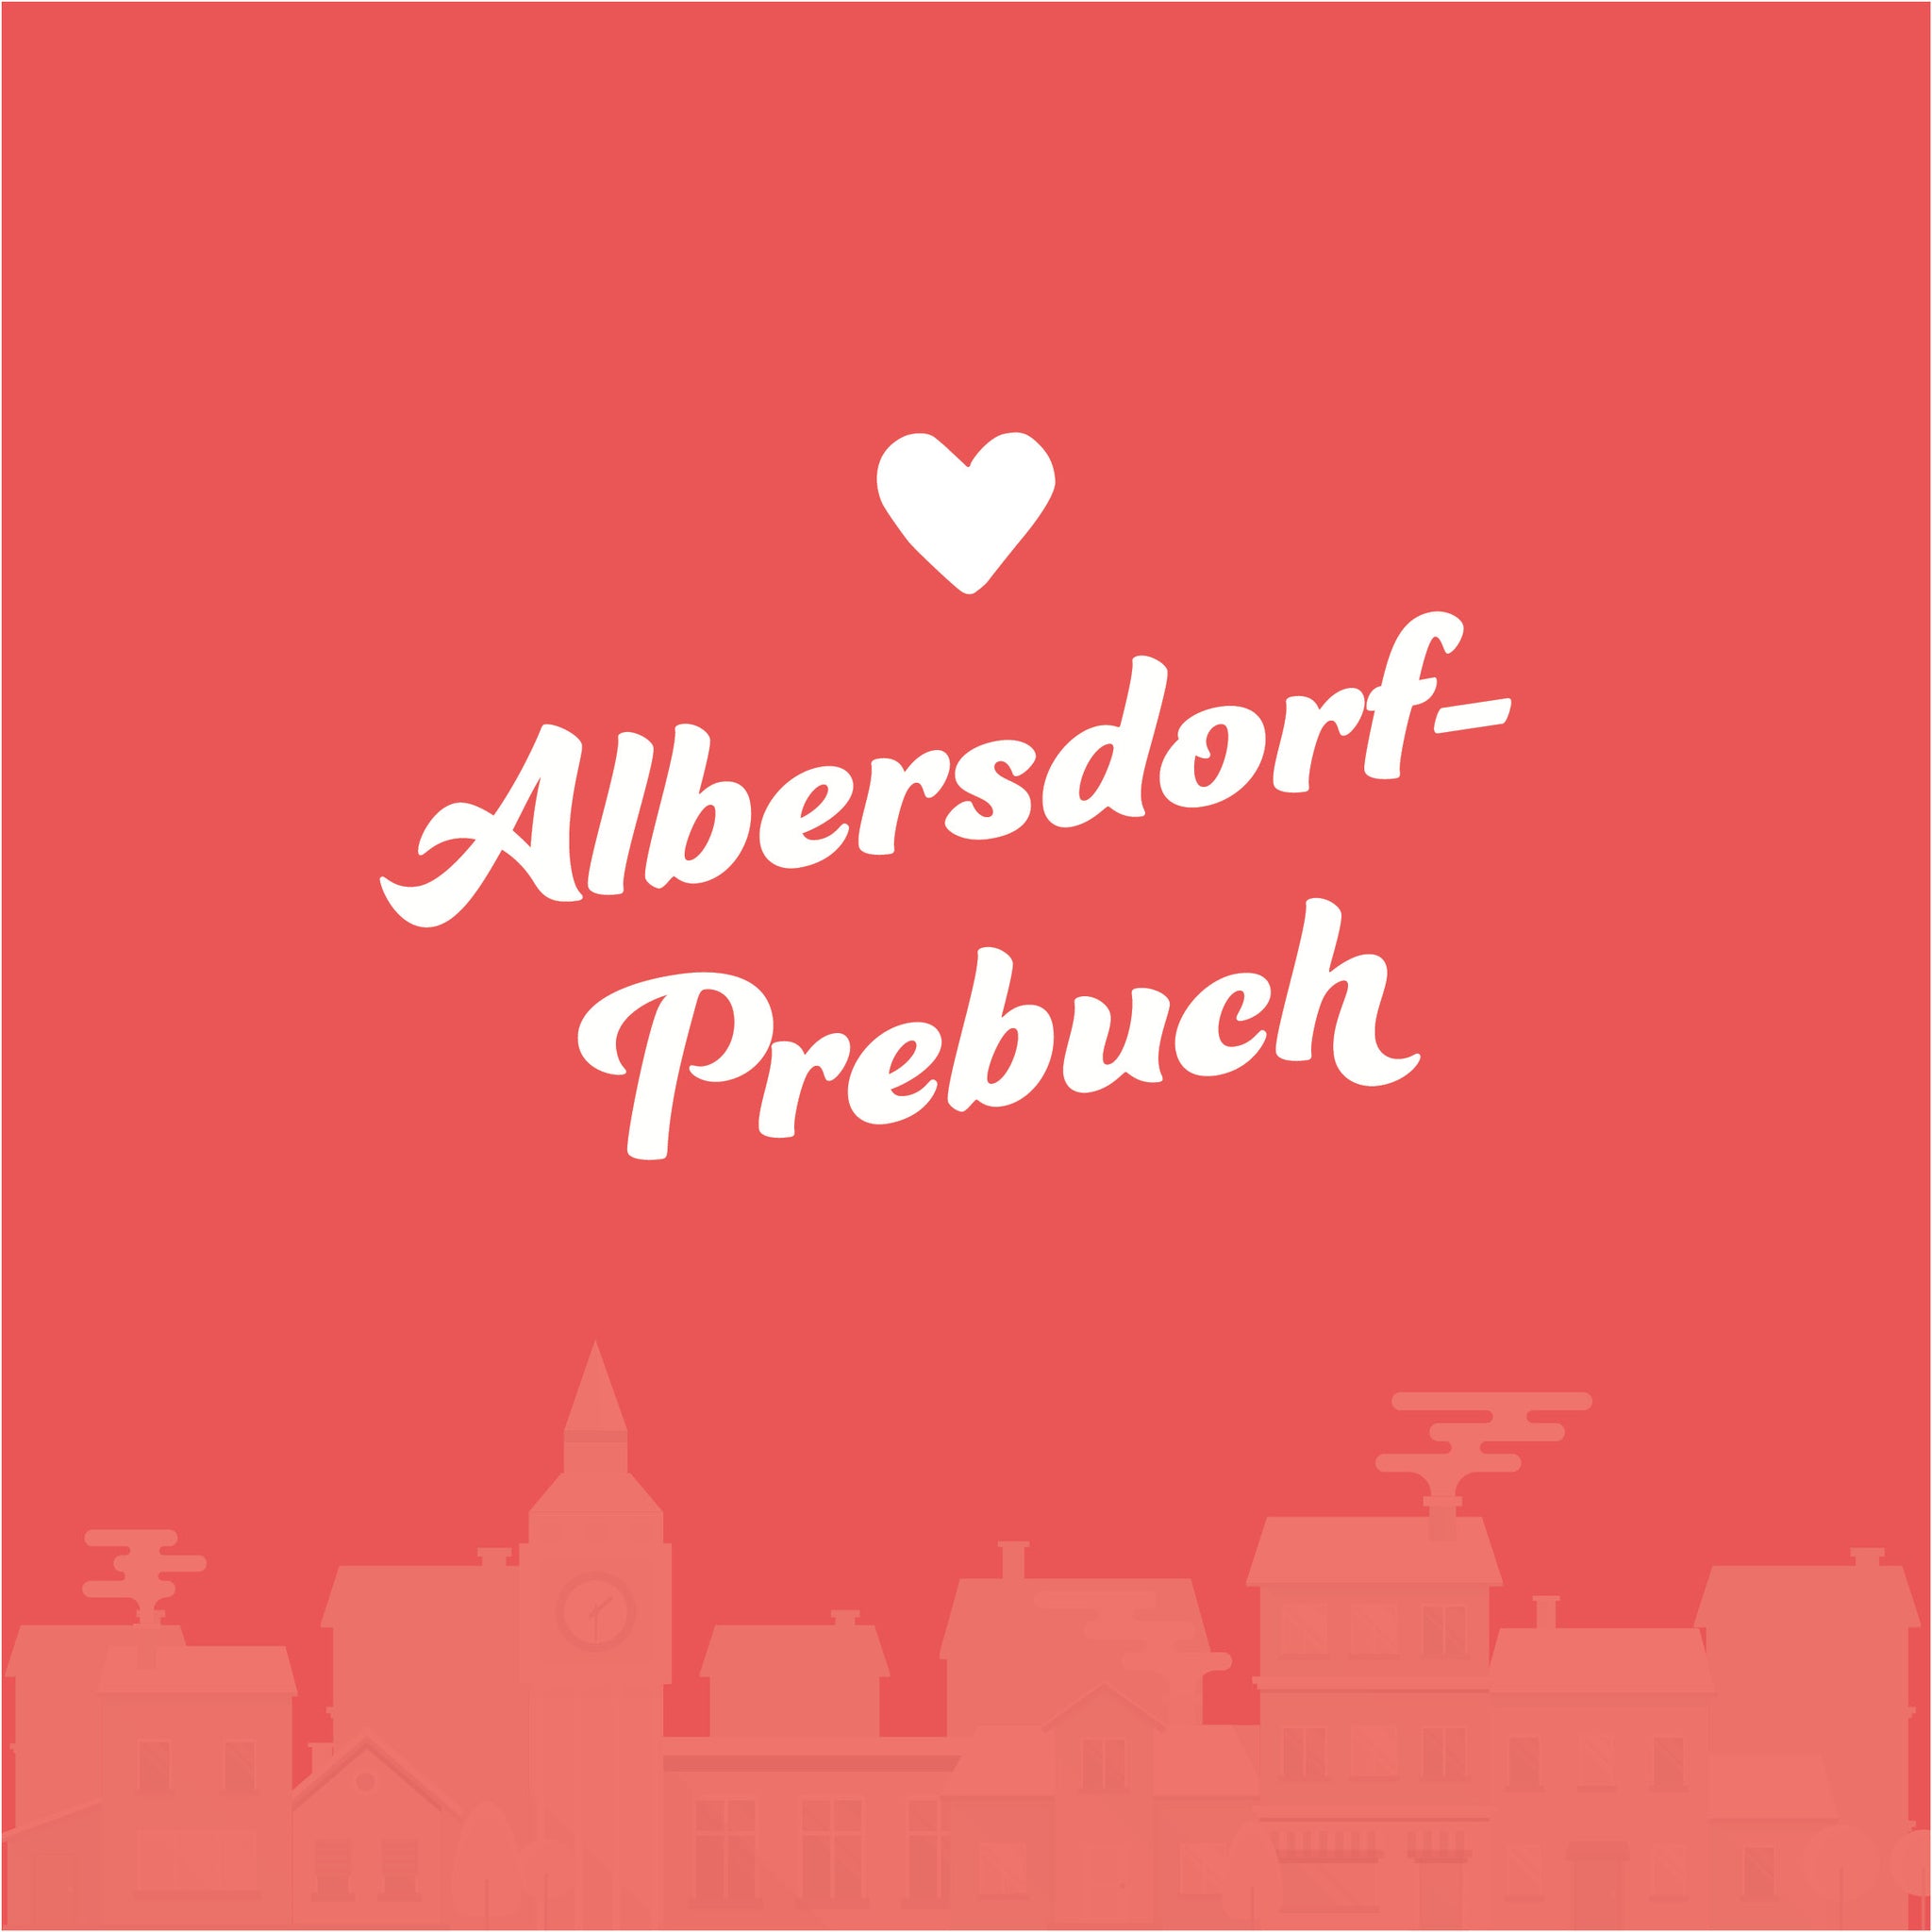 Albersdorf-Prebuch